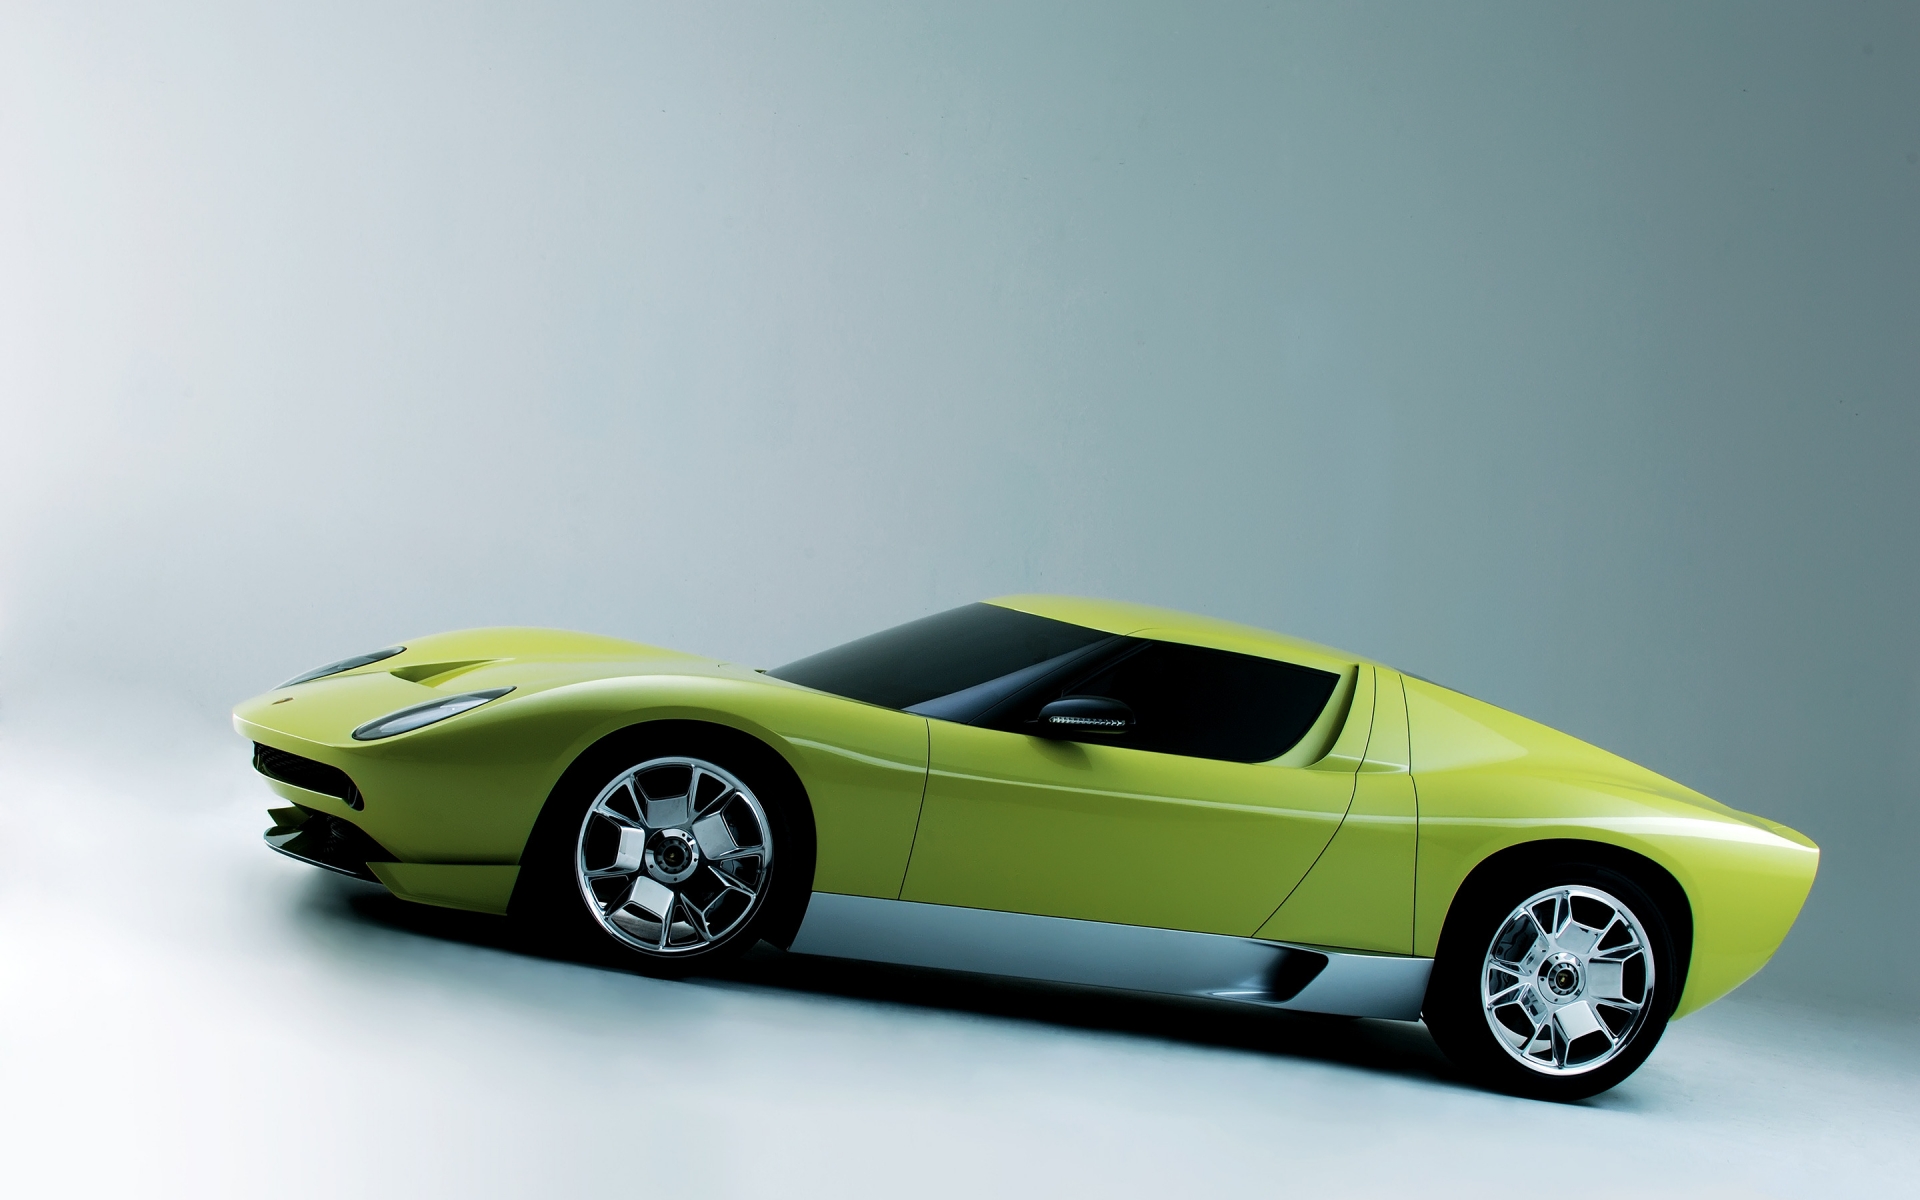 Lamborghini Miura Concept Side for 1920 x 1200 widescreen resolution